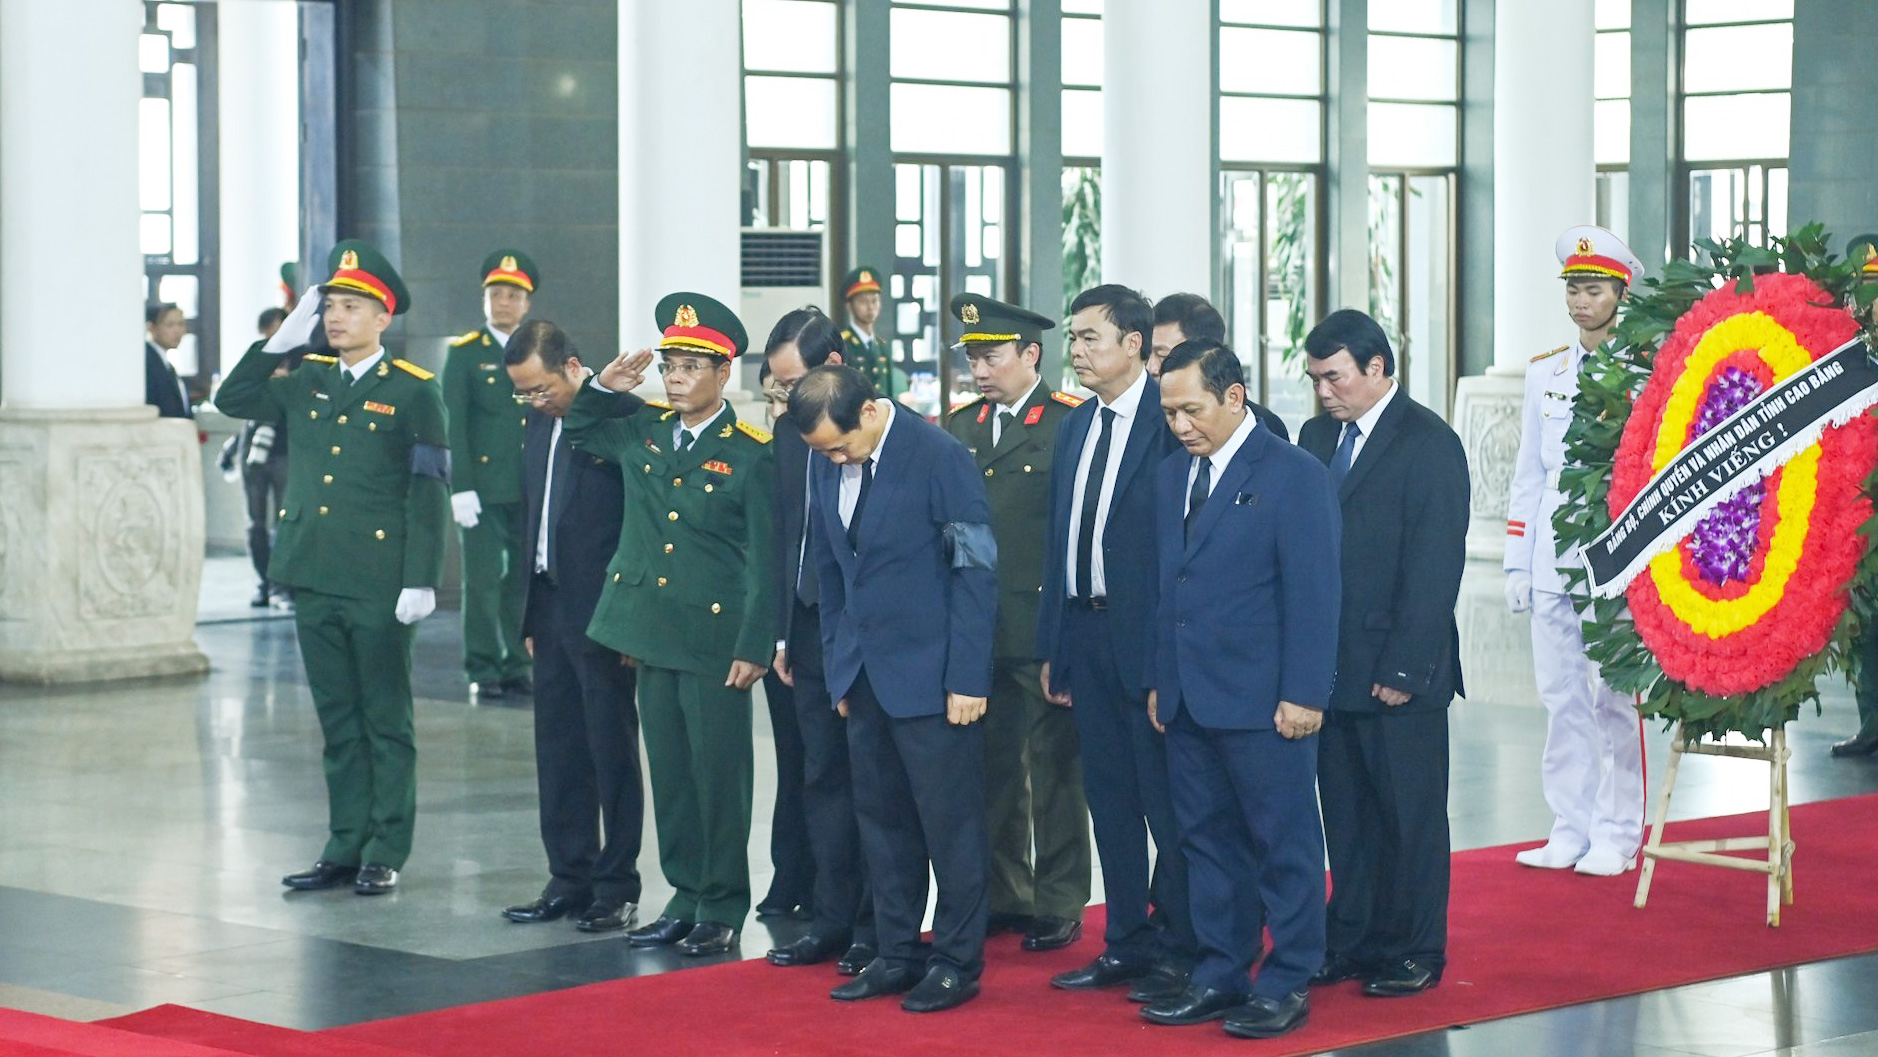 Đoàn đại biểu tỉnh Lâm Đồng dành phút mặc niệm tưởng nhớ Tổng Bí thư Nguyễn Phú Trọng